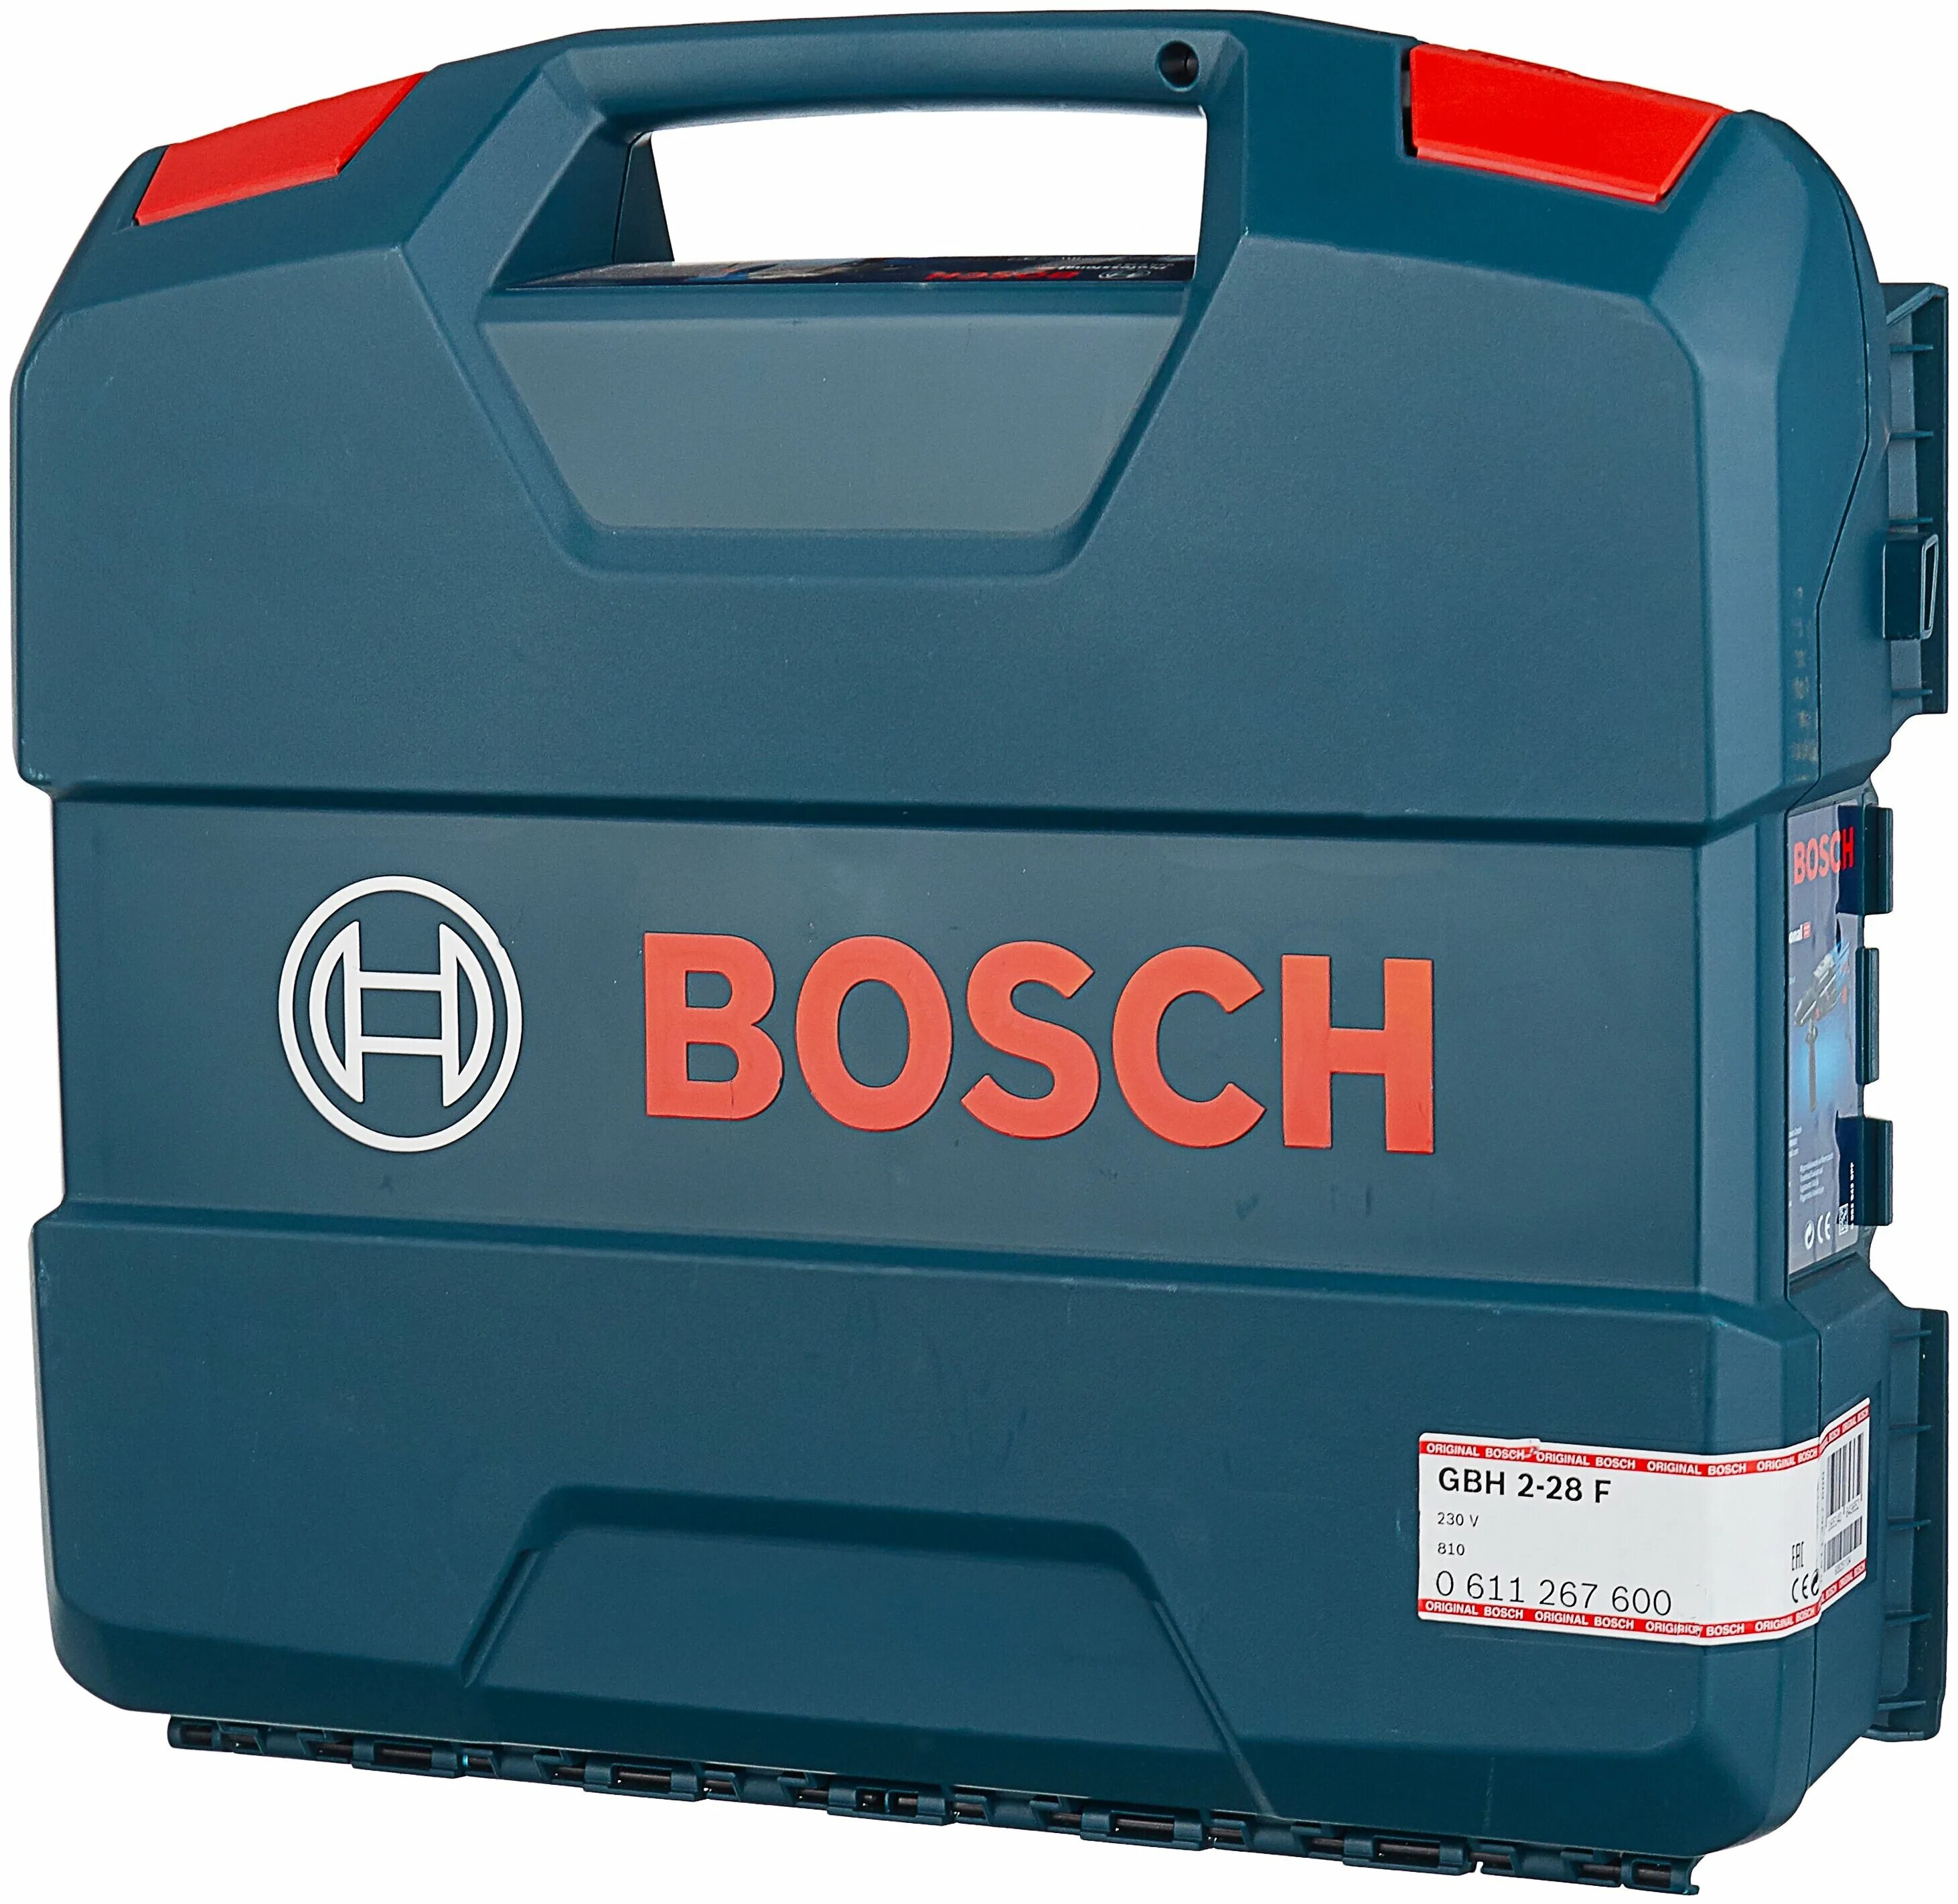 Перфоратор Bosch GBH 2-28 кейс. Перфоратор Bosch GBH 2-28 F 0.611.267.600. Bosch GBH 2-28 (0.611.267.500), 880 Вт. Bosch GBH 2-28.